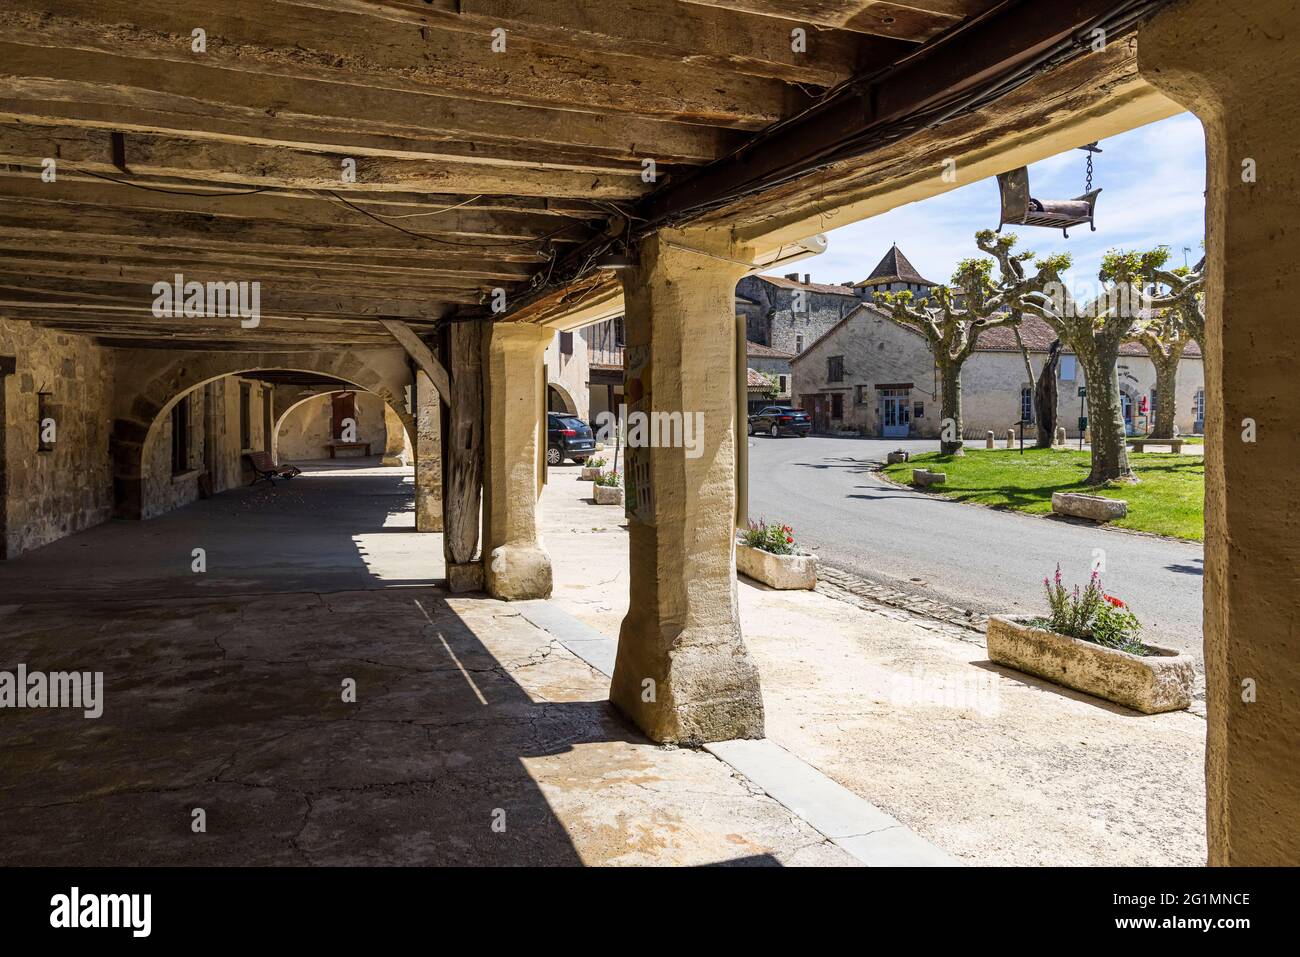 Frankreich, Gers, Sources, beschriftet Les Plus Beaux Villages de France (die schönsten Dörfer Frankreichs), ummauerter Stadtplatz Stockfoto